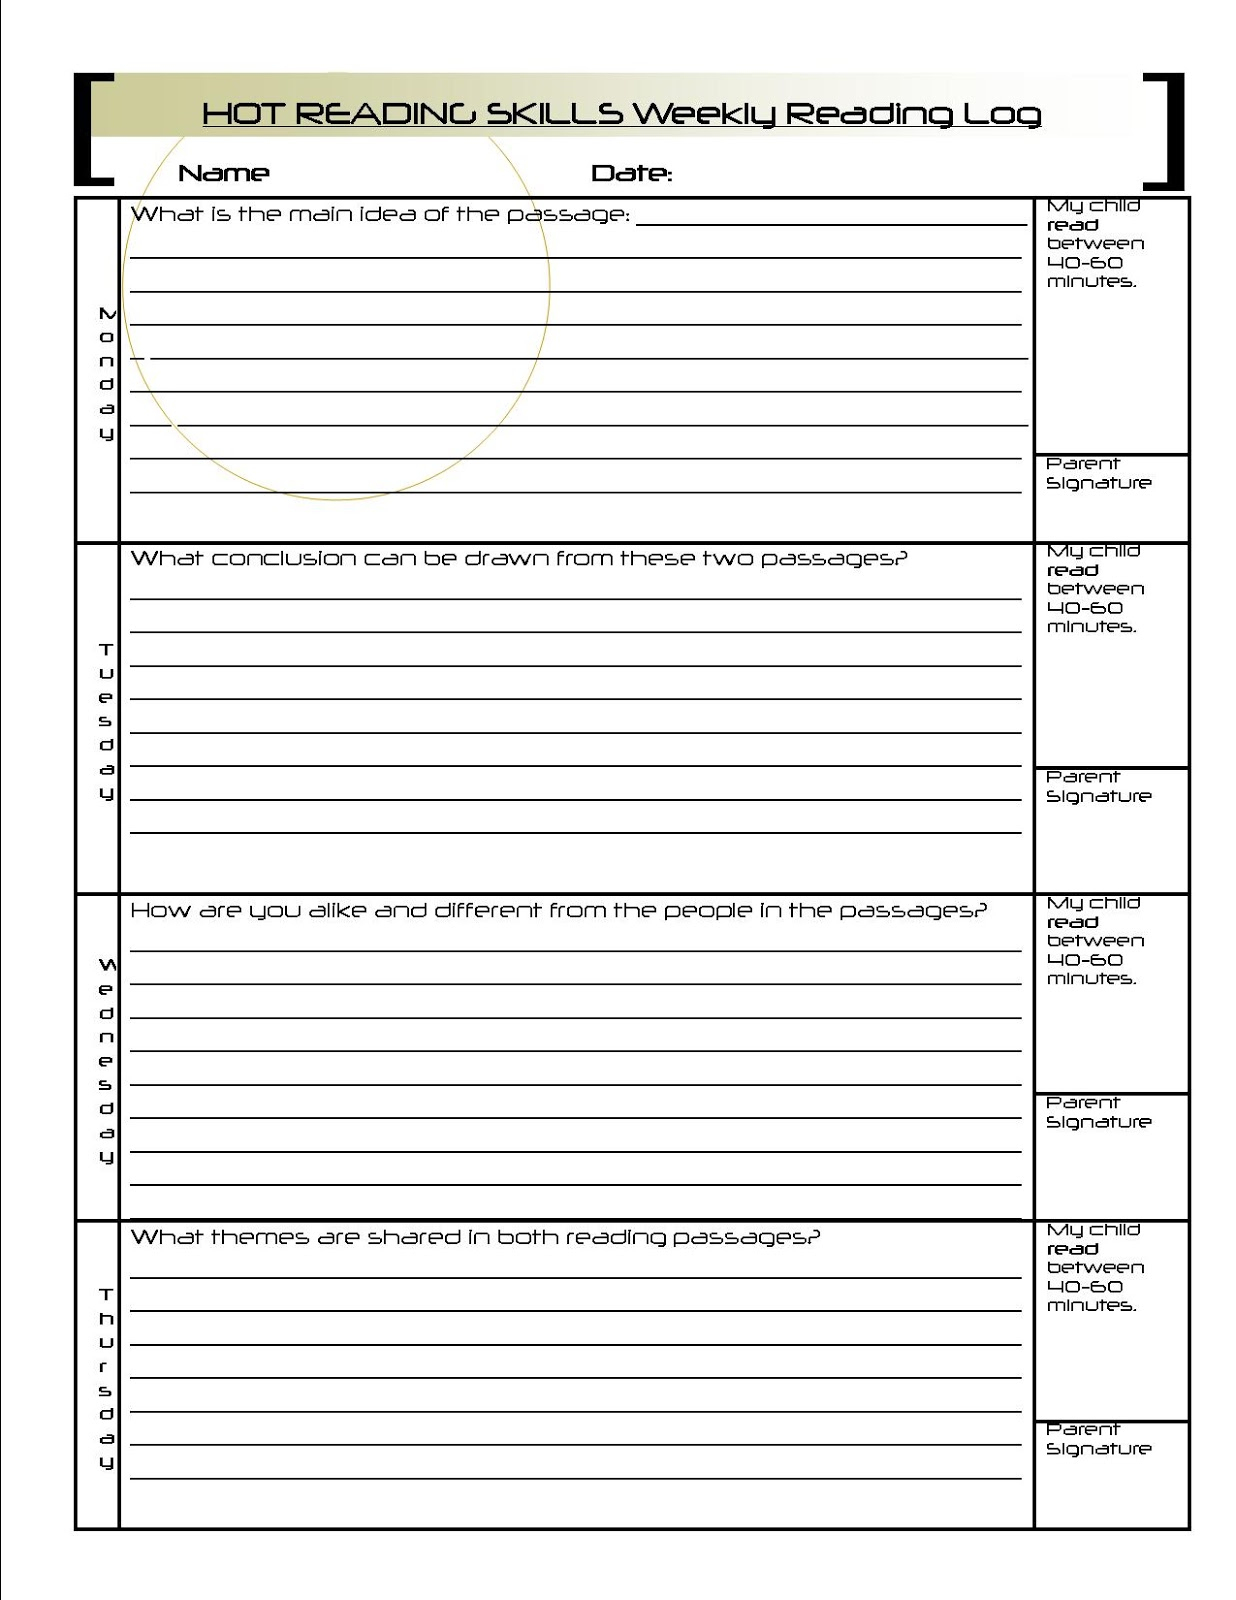 Worksheet. 2Nd Grade Reading Comprehension Worksheets Pdf. Worksheet - Free Printable Reading Passages For 3Rd Grade